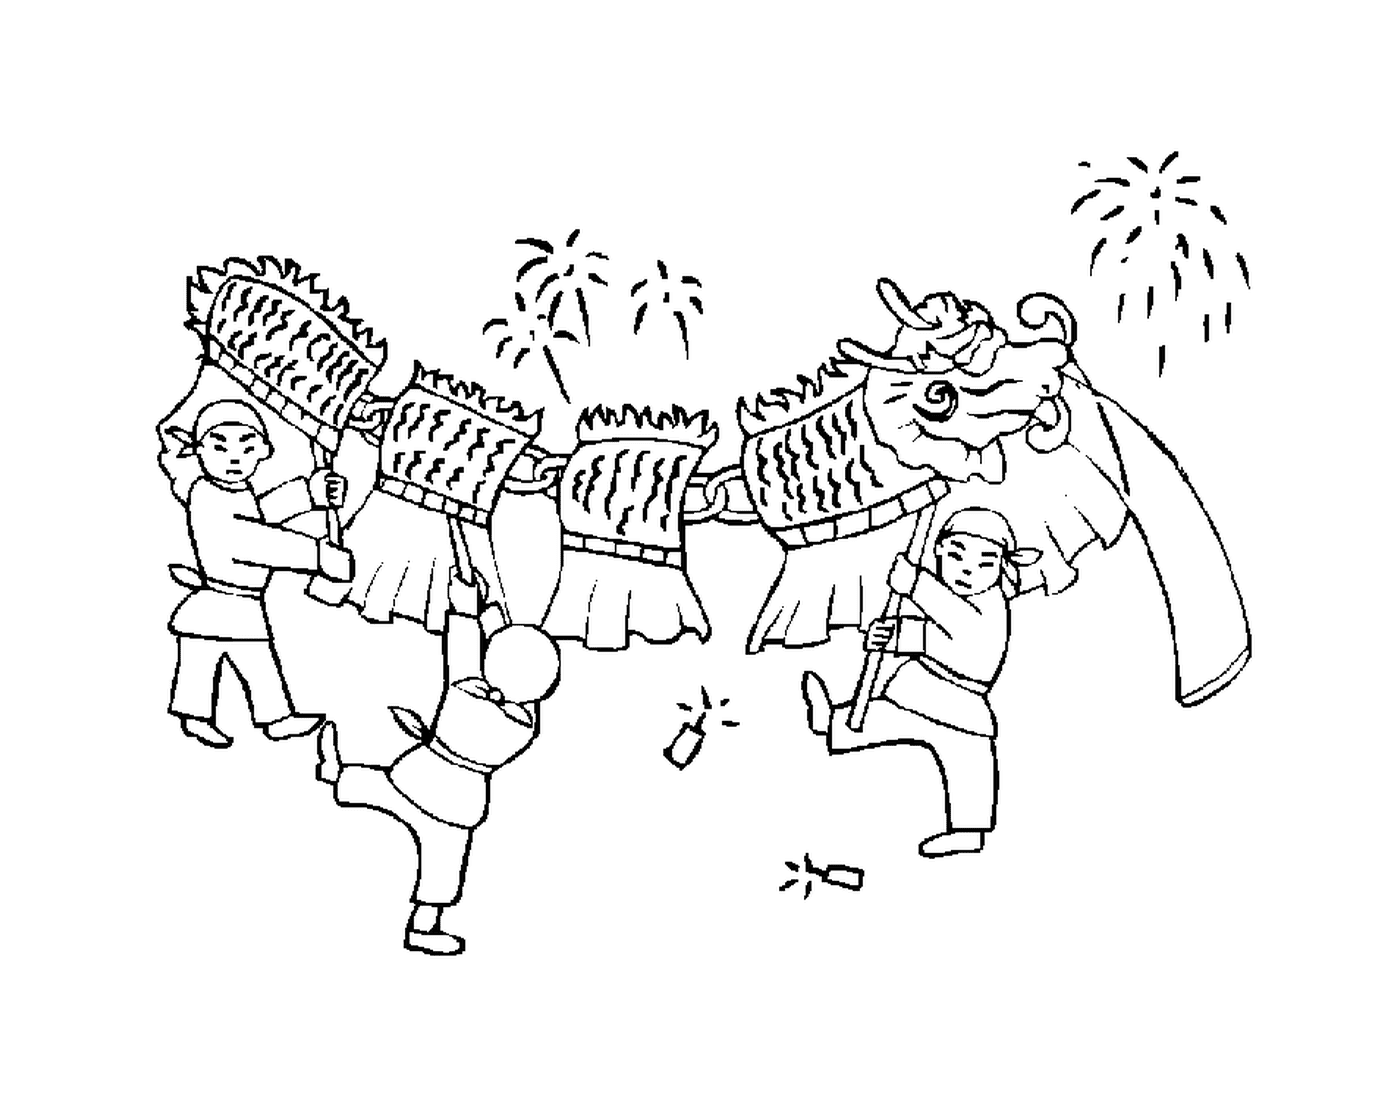  चीनी नए साल के लिए ड्रैगन परेड 